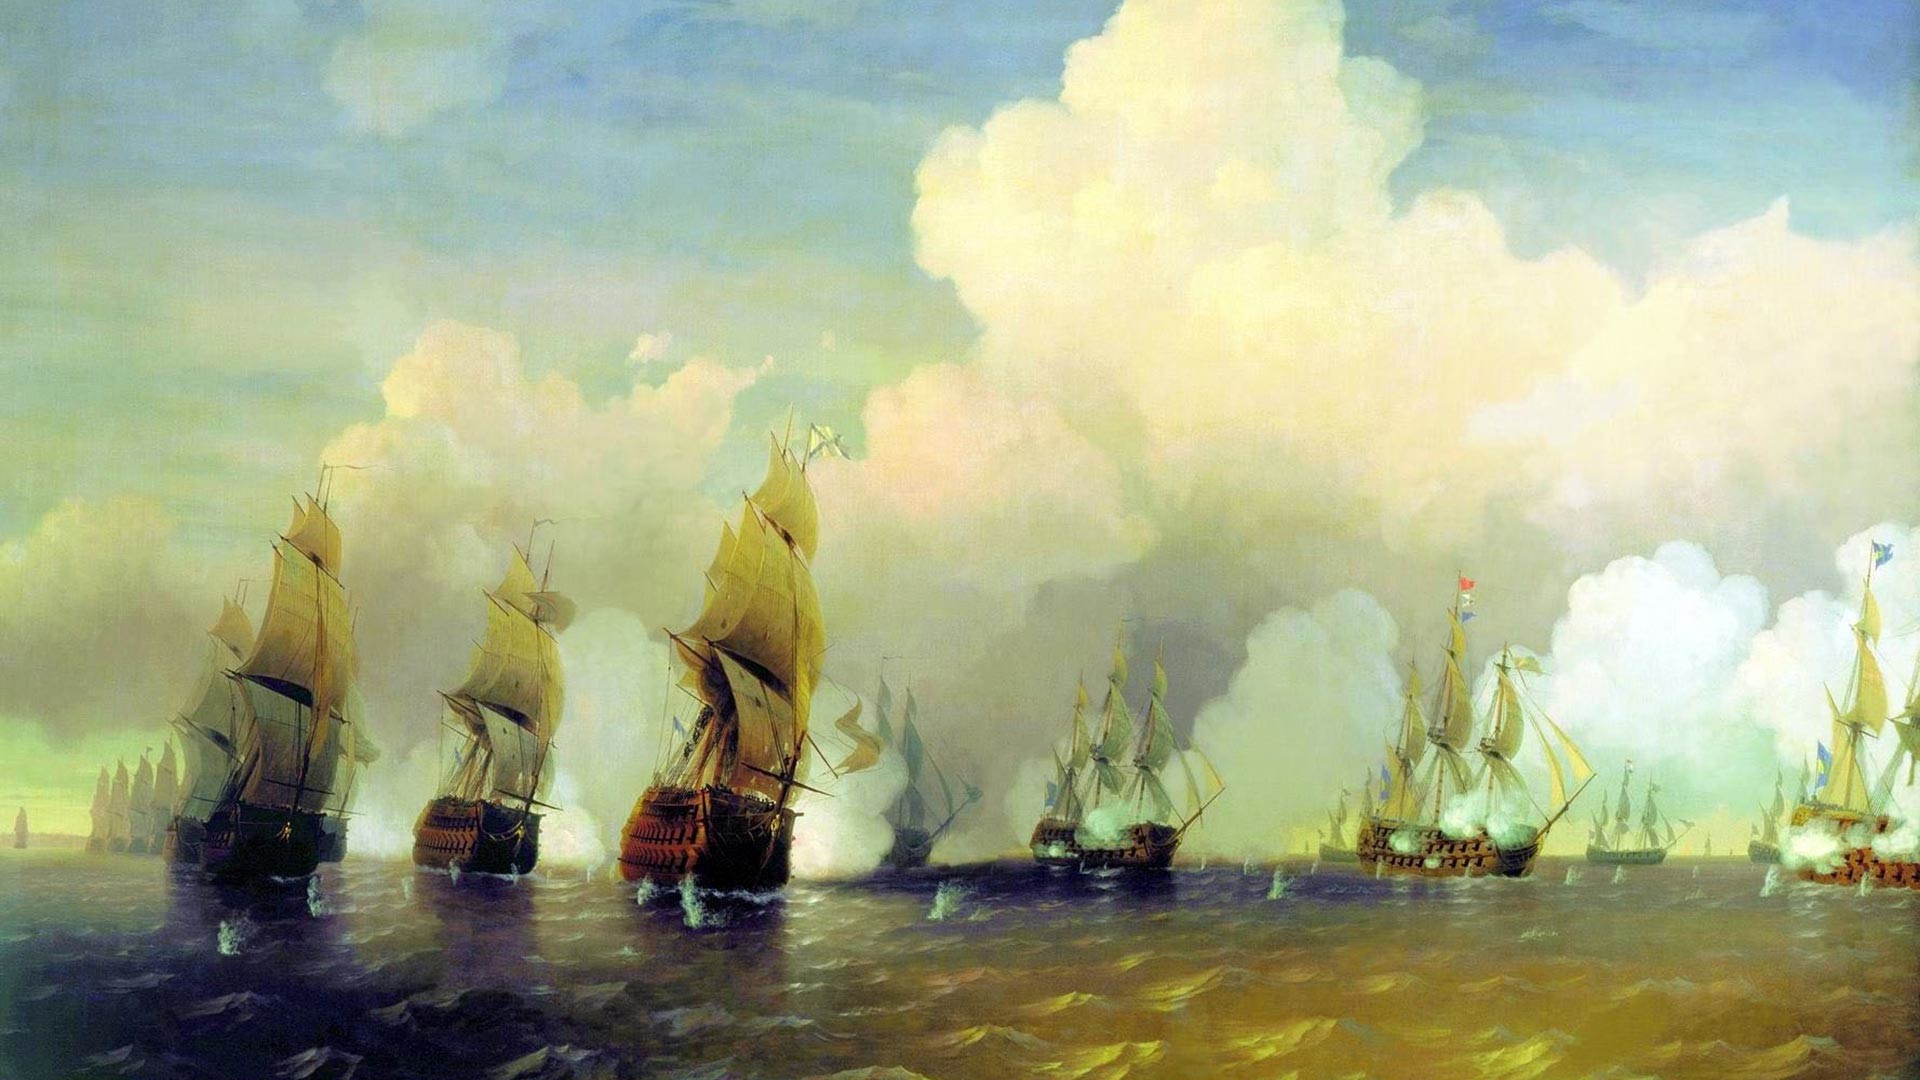 Алексей Боголюбов «Сражение русского флота со шведским флотом в 1790 году вблизи Кронштадта при Красной Горке», 1860-е годы.